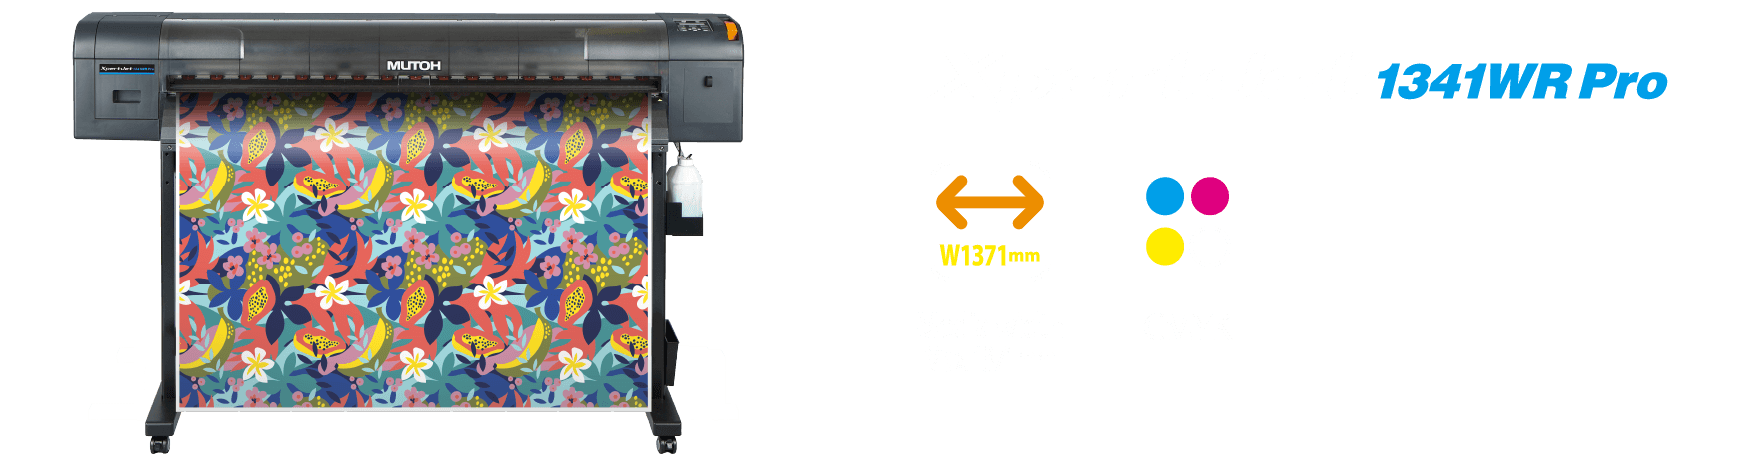 XpertJet 1341WR Pro